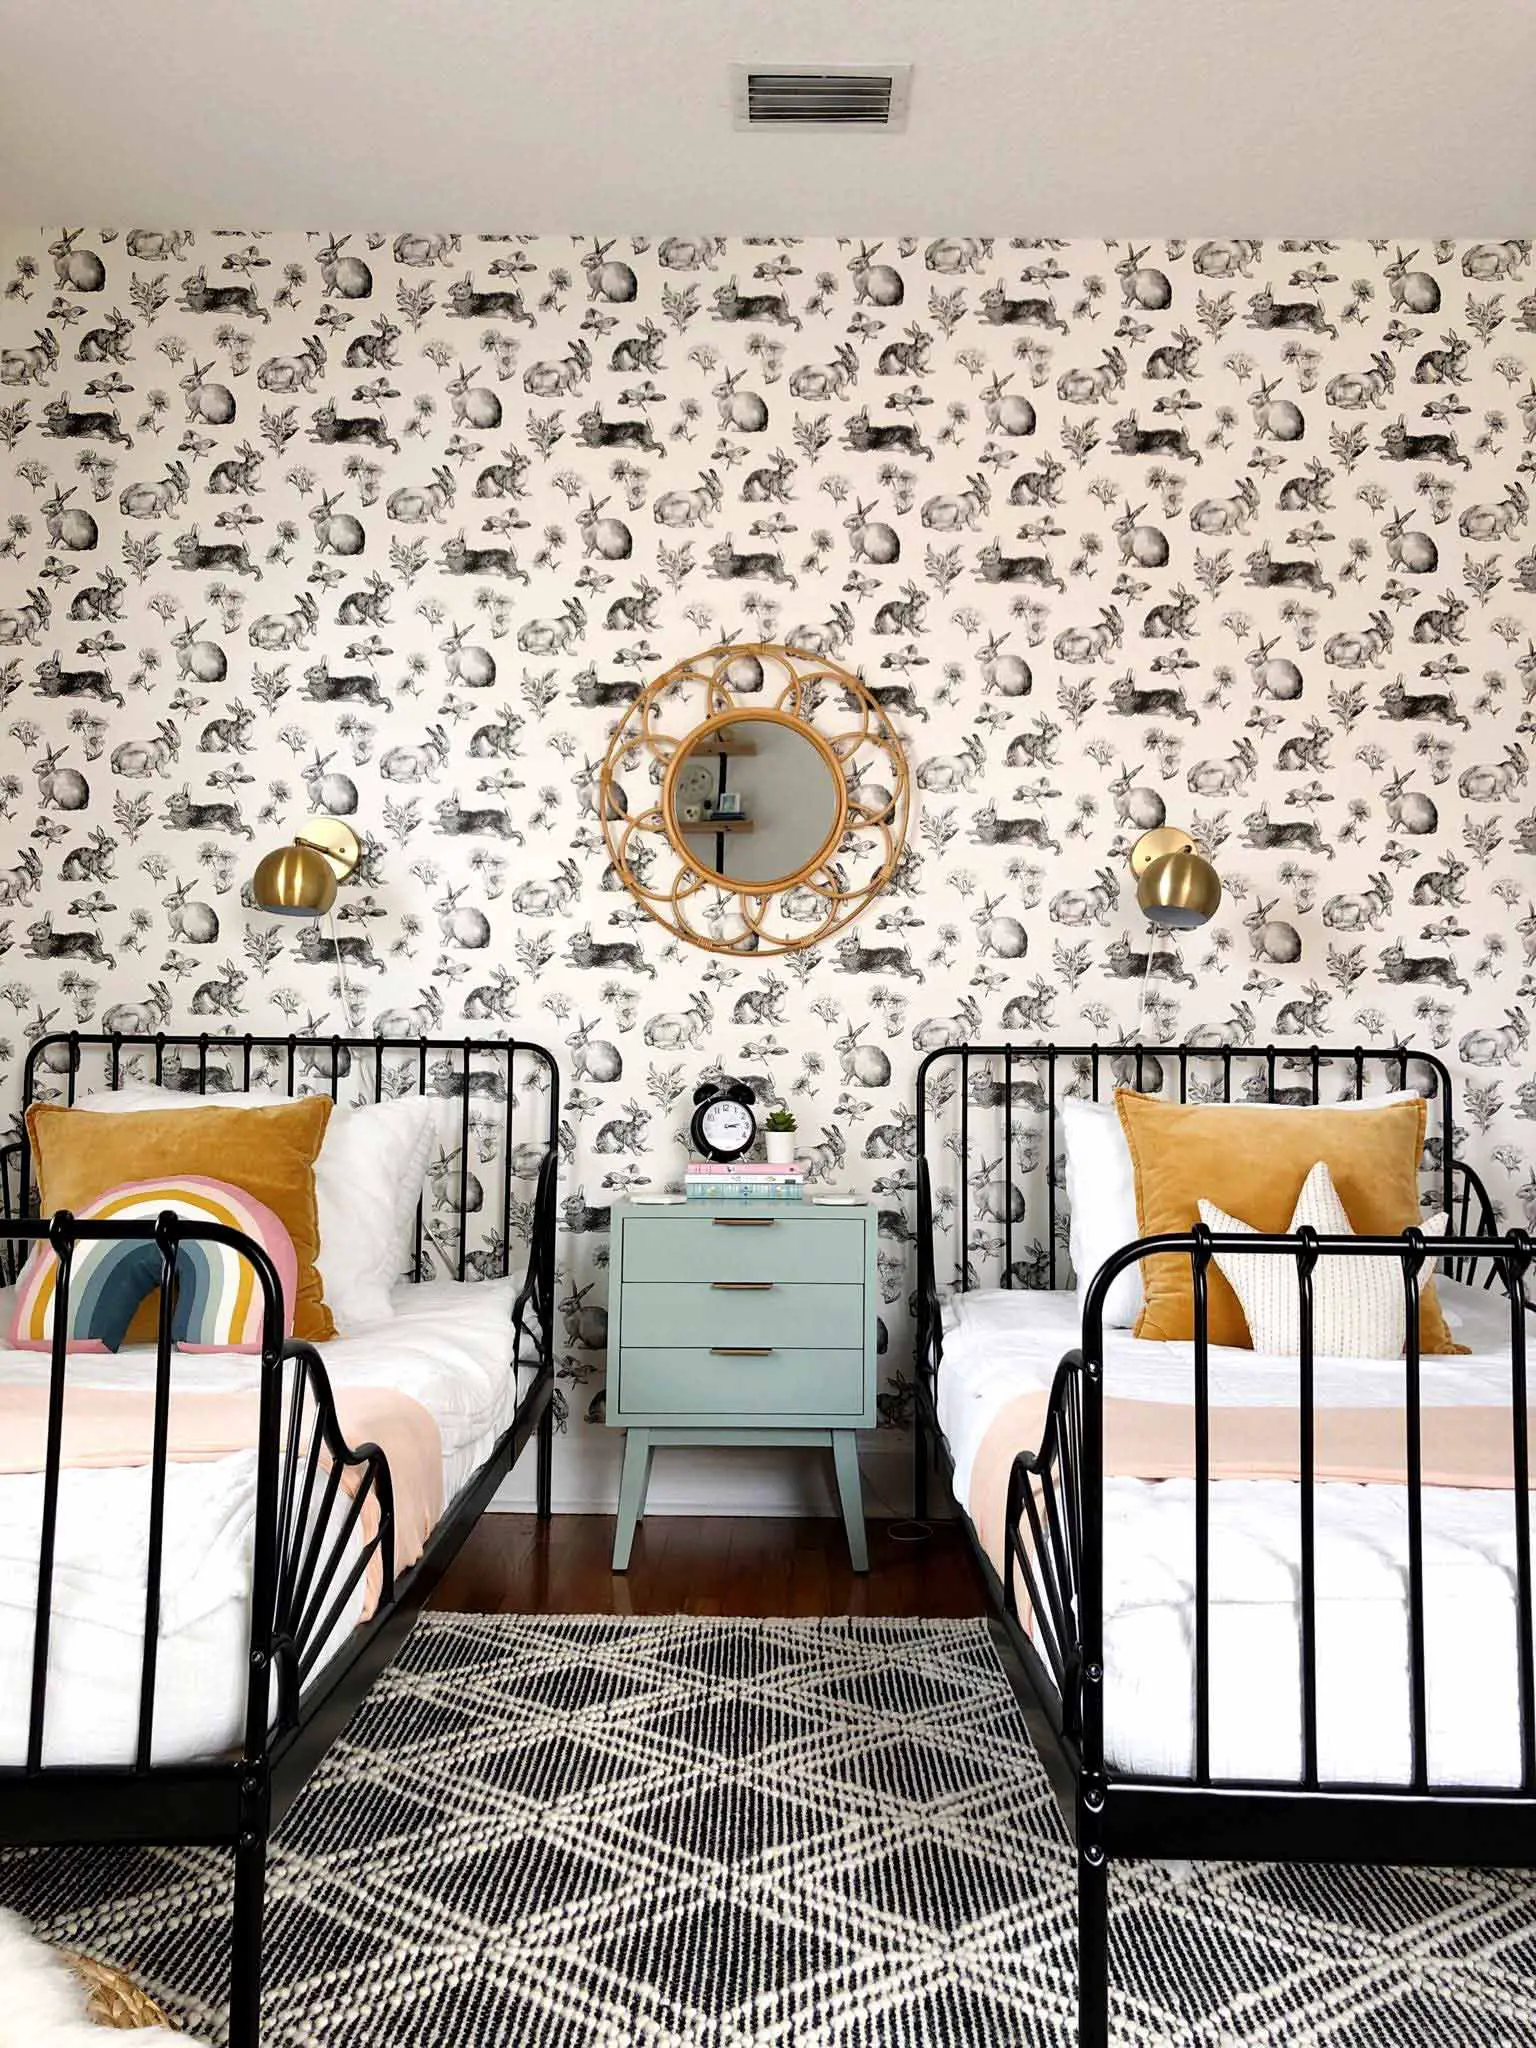 twin bedroom with rabbit wallpaper